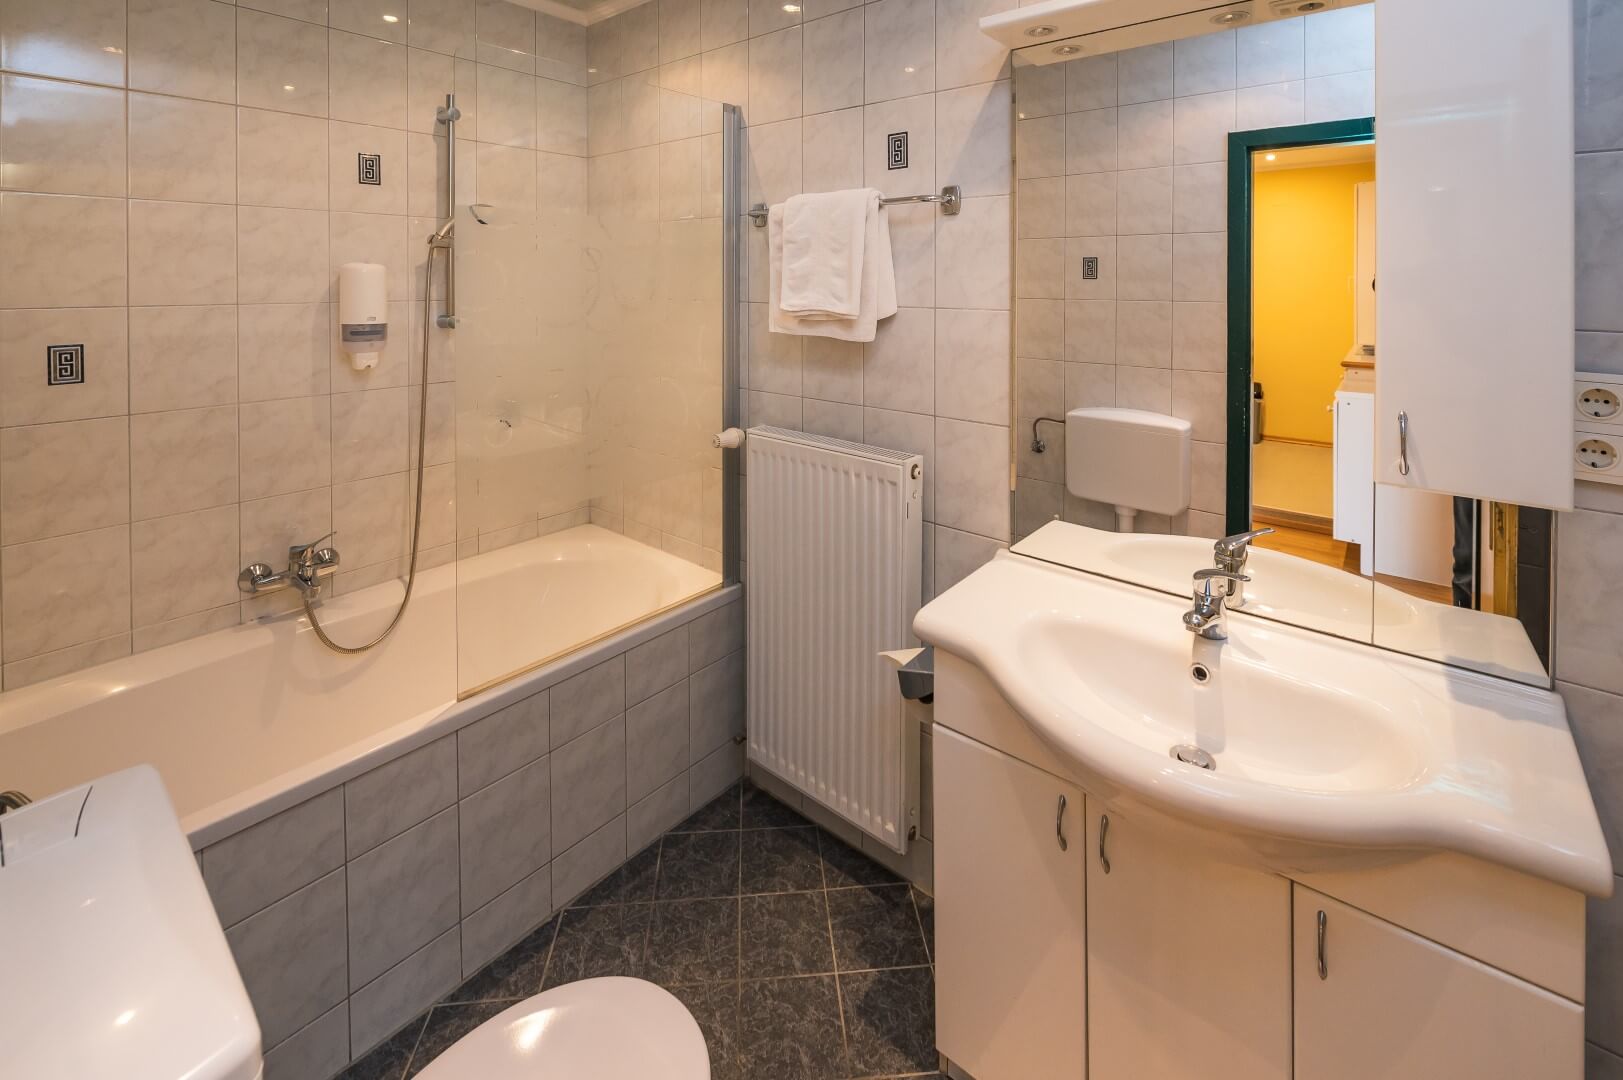 Gepflegtes Badezimmer mit Badewanne, weißen Sanitäranlagen und direktem Zugang zum Schlafzimmer.